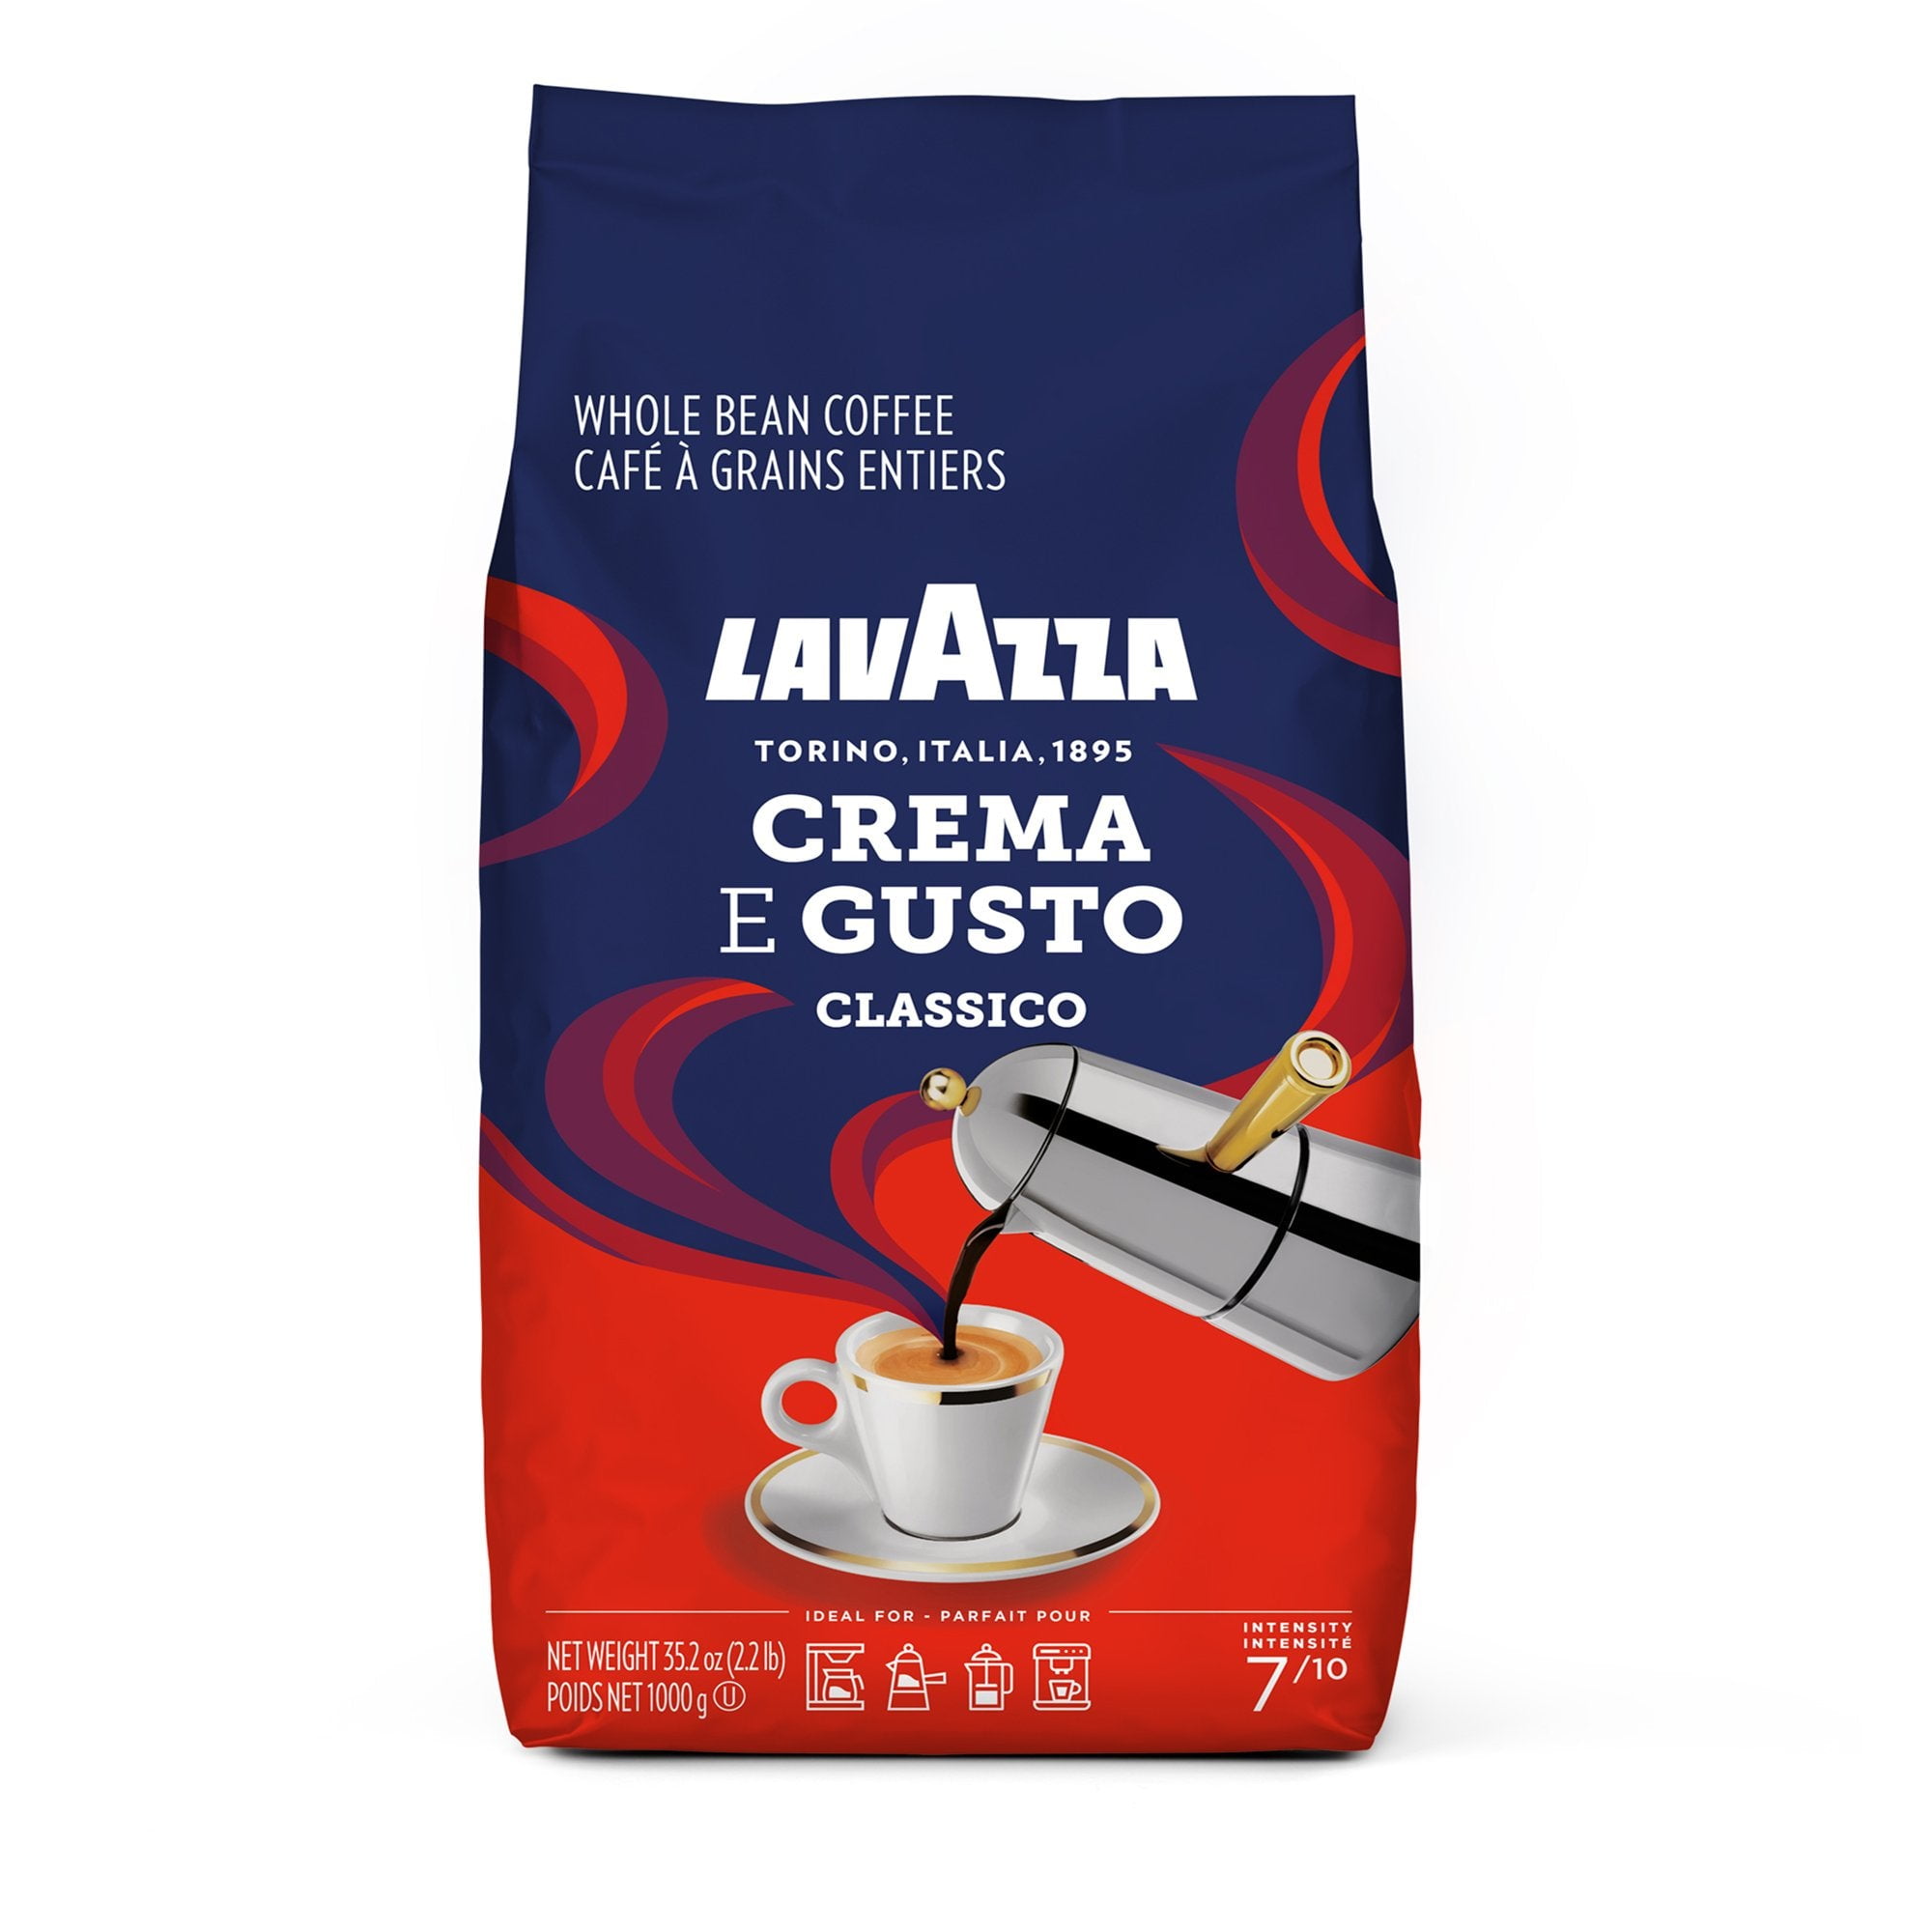 Lavazza Super Crema Espresso Whole Bean Coffee, 2.2-pound Bag 2